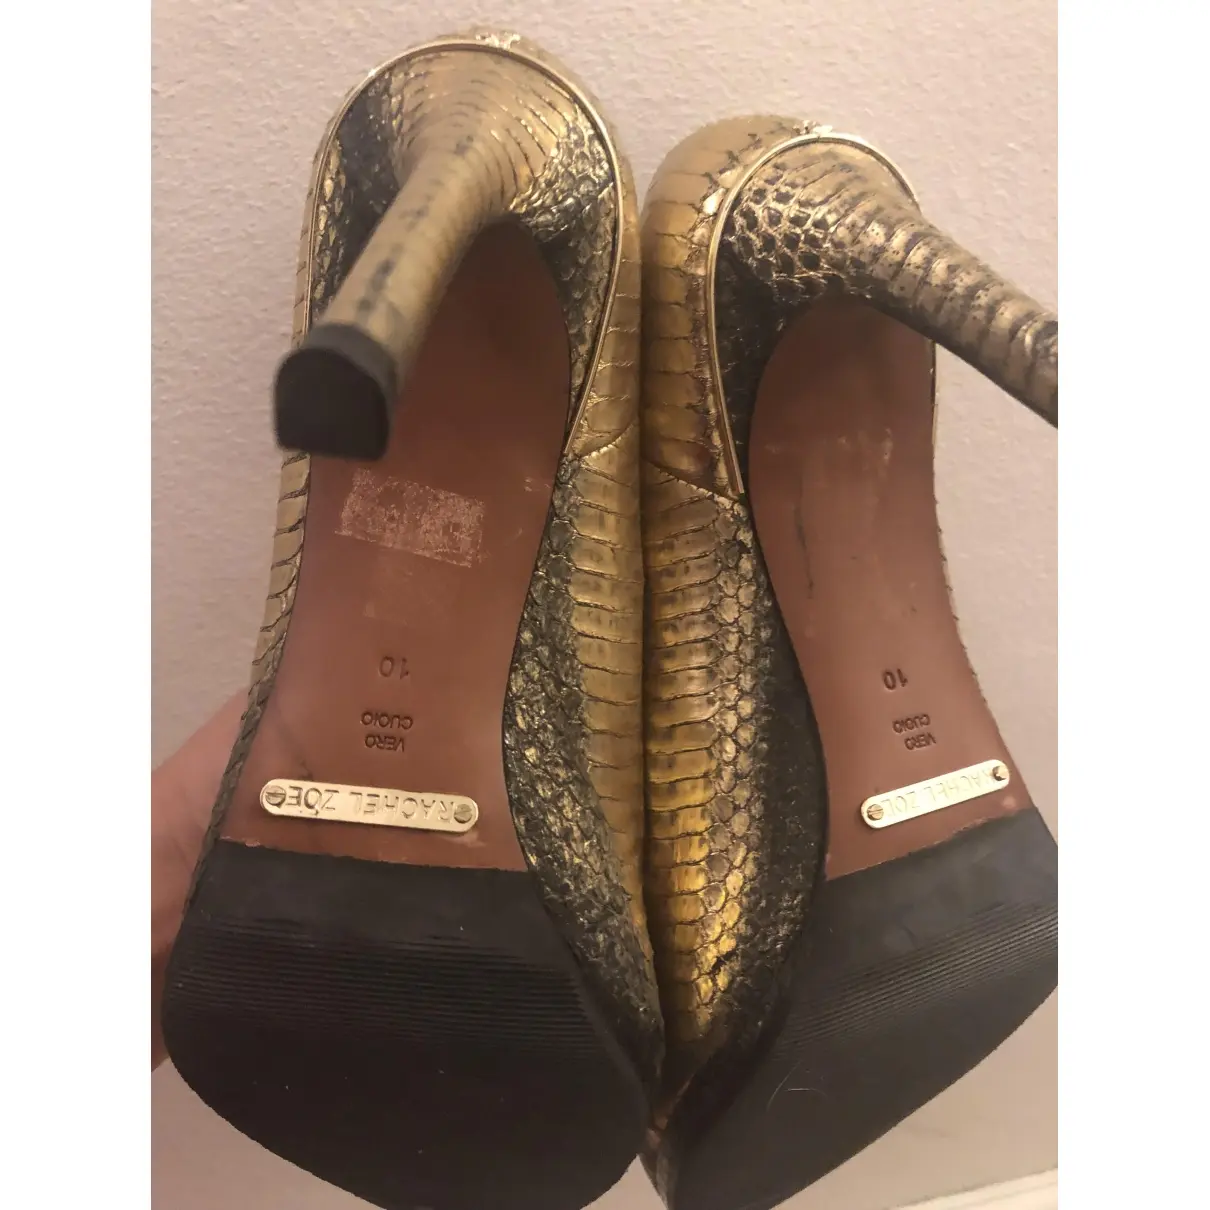 Buy Rachel Zoe Python heels online